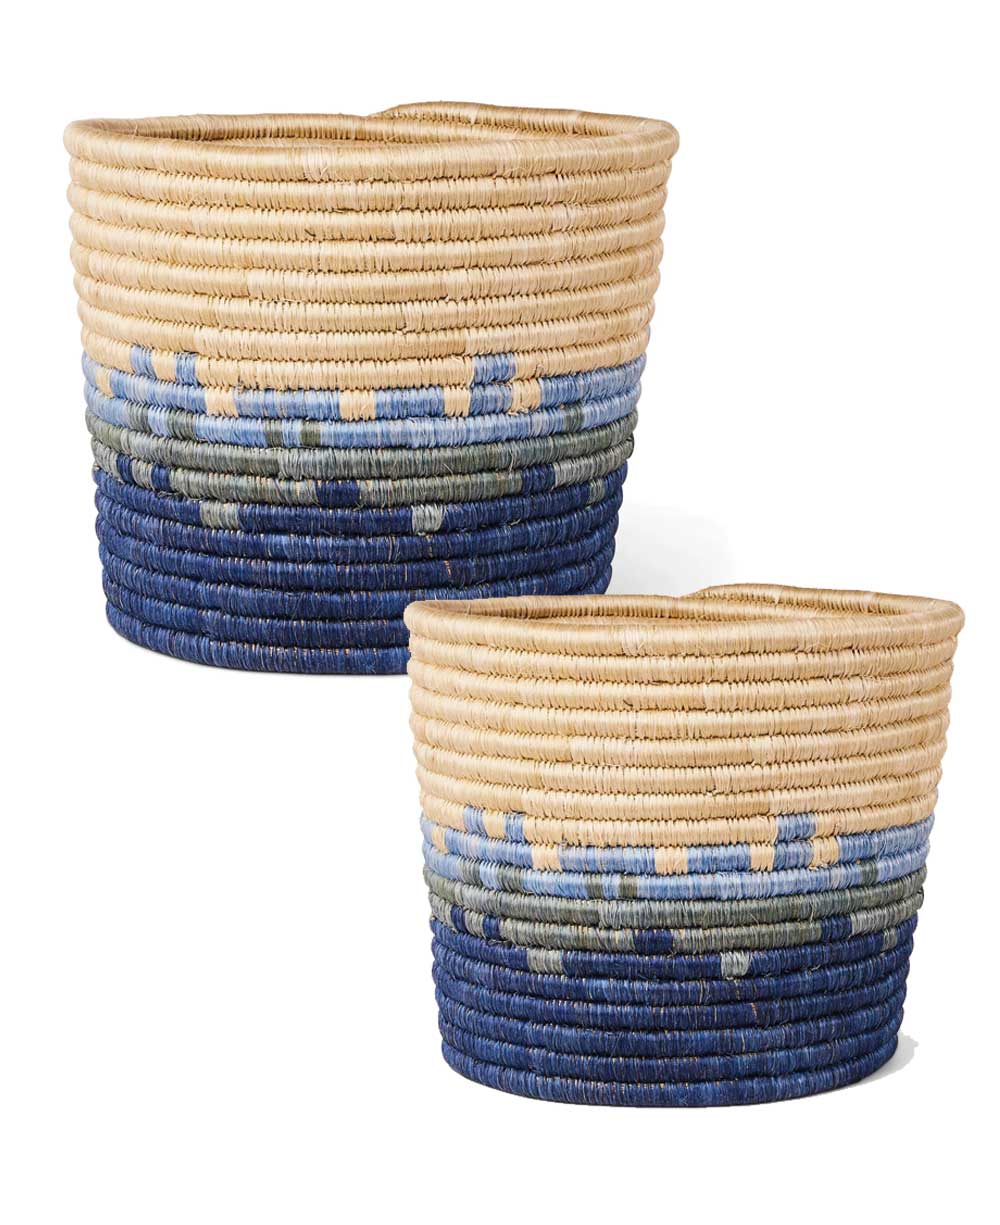 Sweetgrass fiber baskets